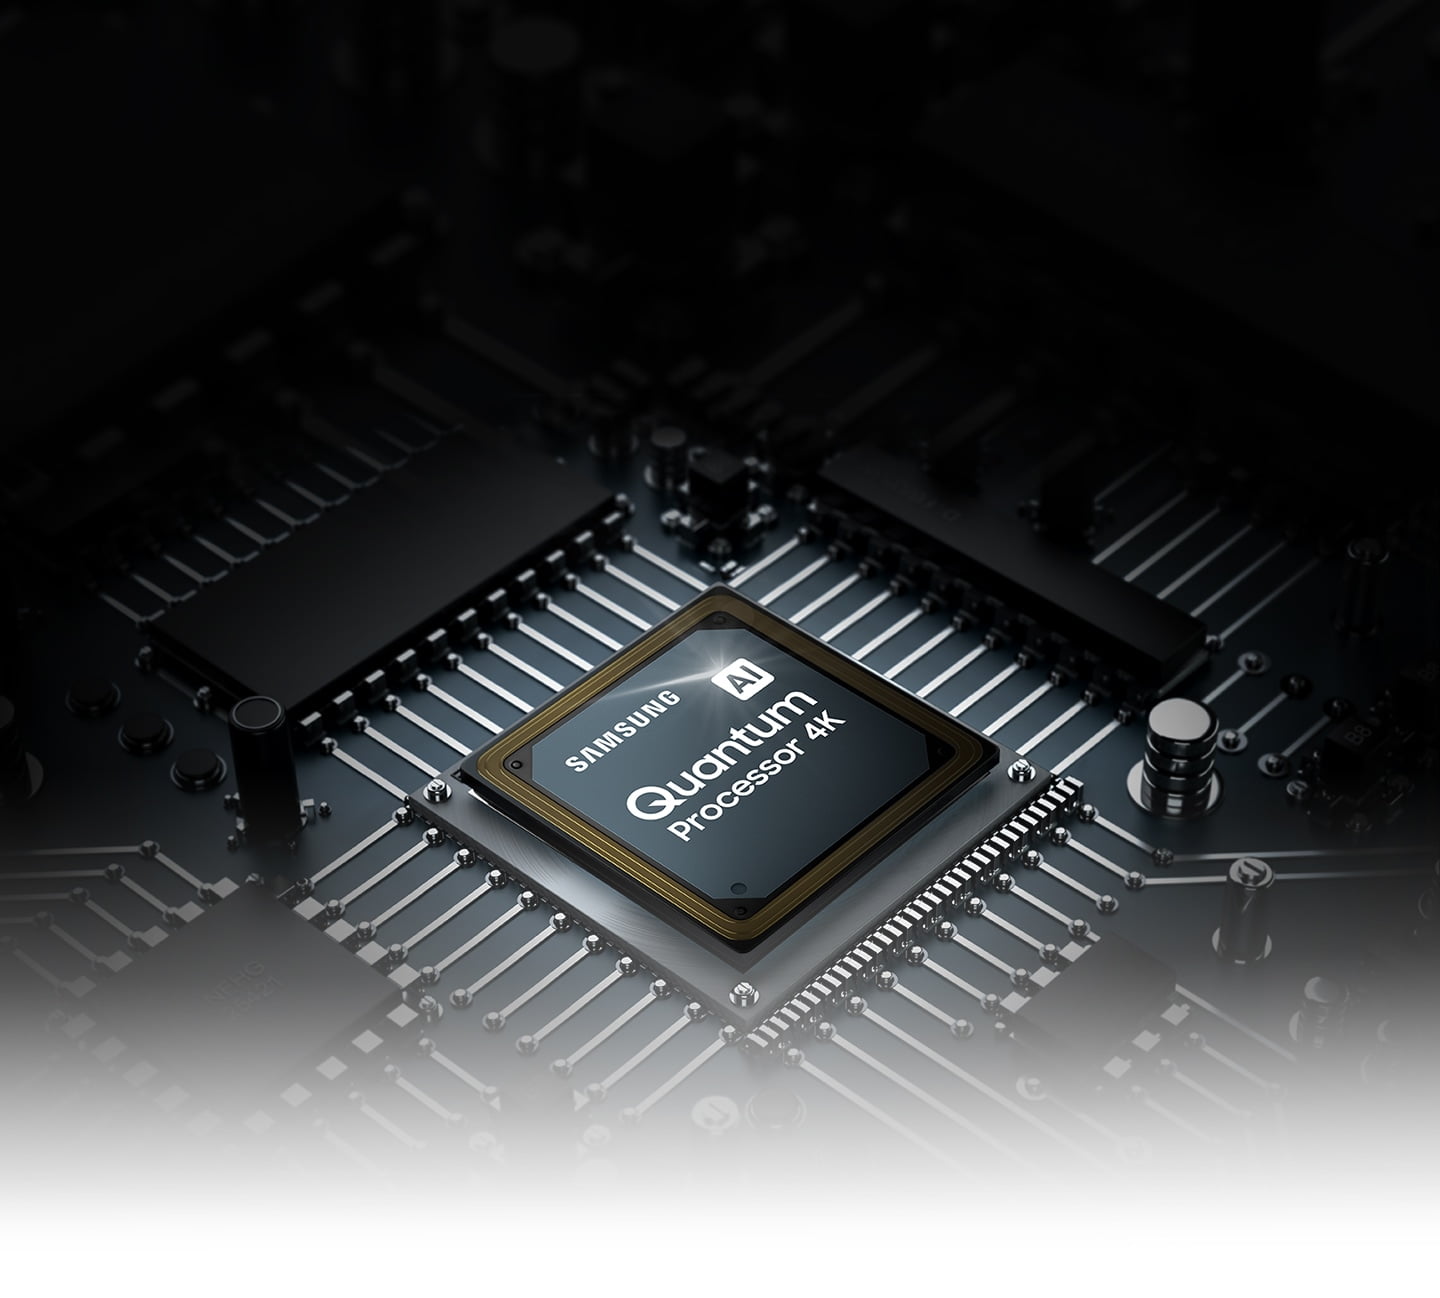 Procesor AI Quantum 4K w nowych telewizorach Samsung QLED Q70A zapewnia skalowanie do 4K dzięki sztucznej inteligencji.